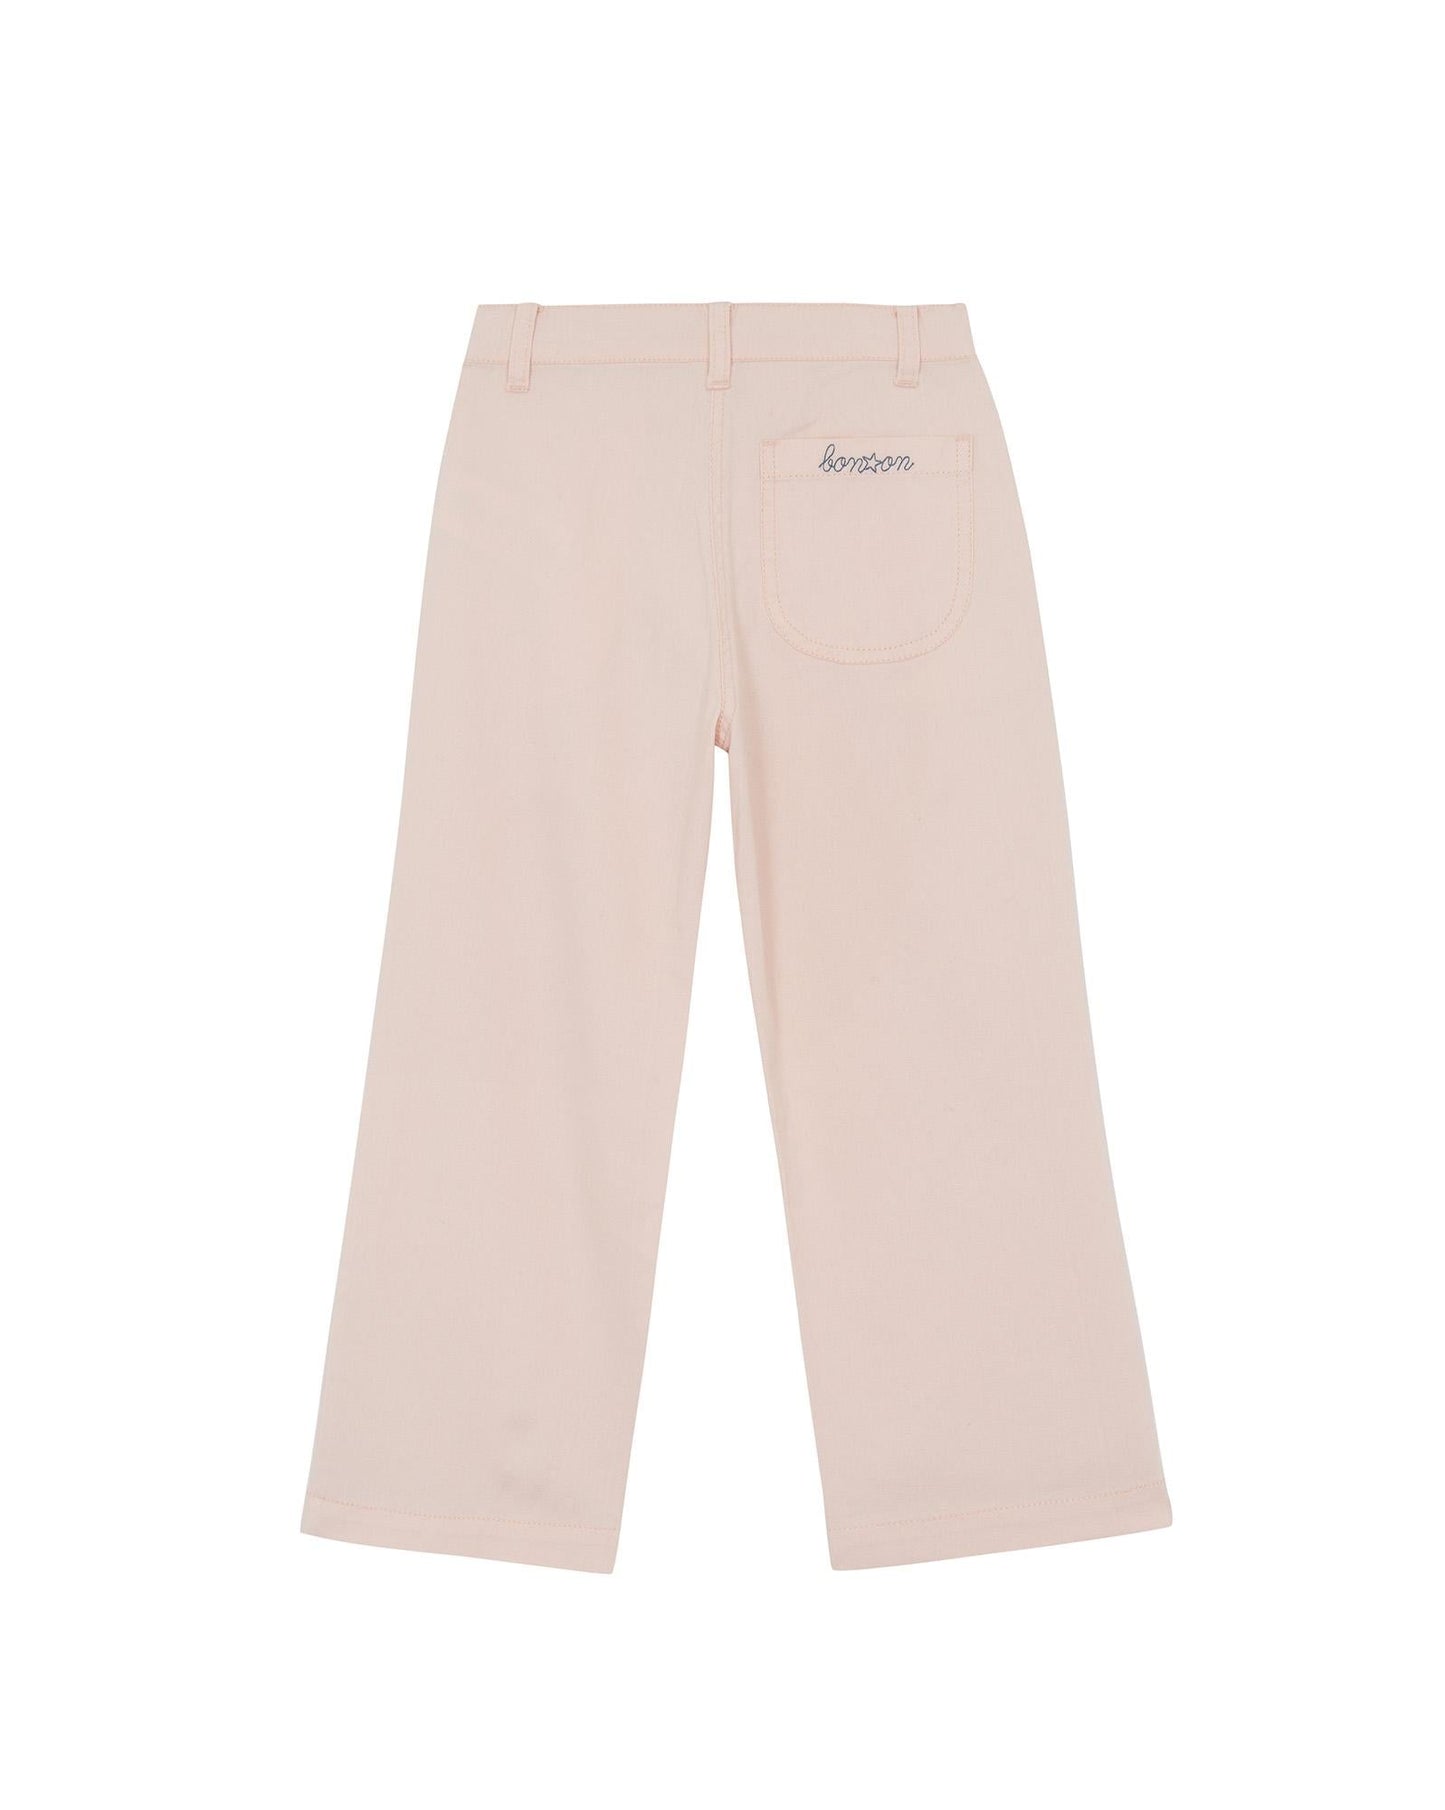 Pantalon - Hakiko rose en 100% coton